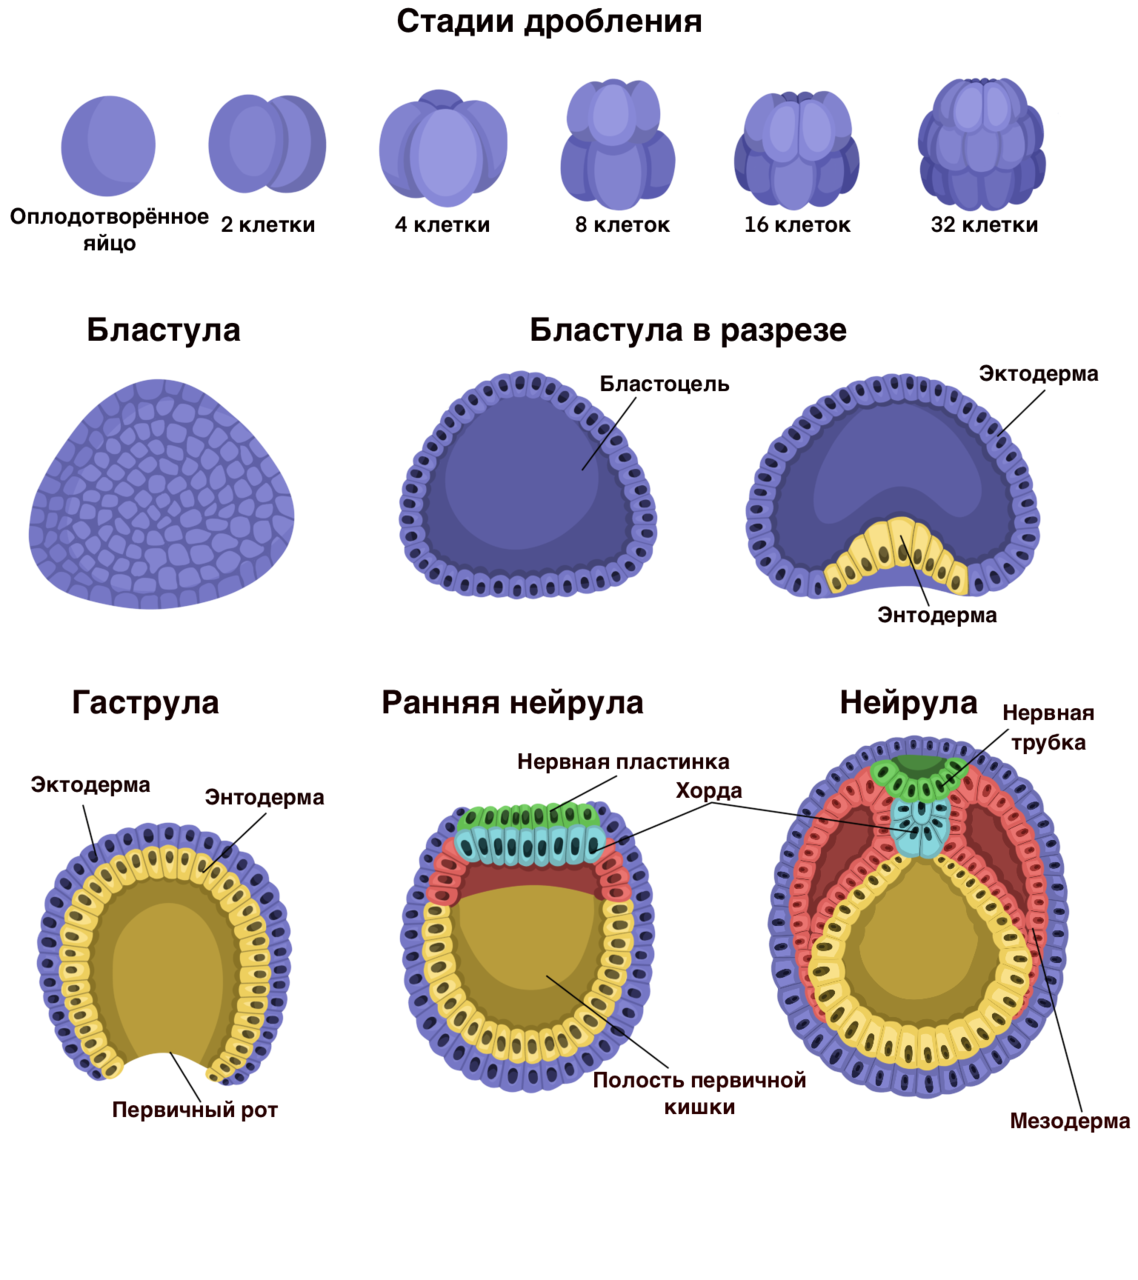 Схема эмбриогенеза ланцетника название какой его стадии. Зигота морула бластула гаструла нейрула. Образование бластулы гаструлы нейрулы. Стадии развития зародыша бластула гаструла нейрула. Гаструла гистогенез бластула нейрула морула зигота.